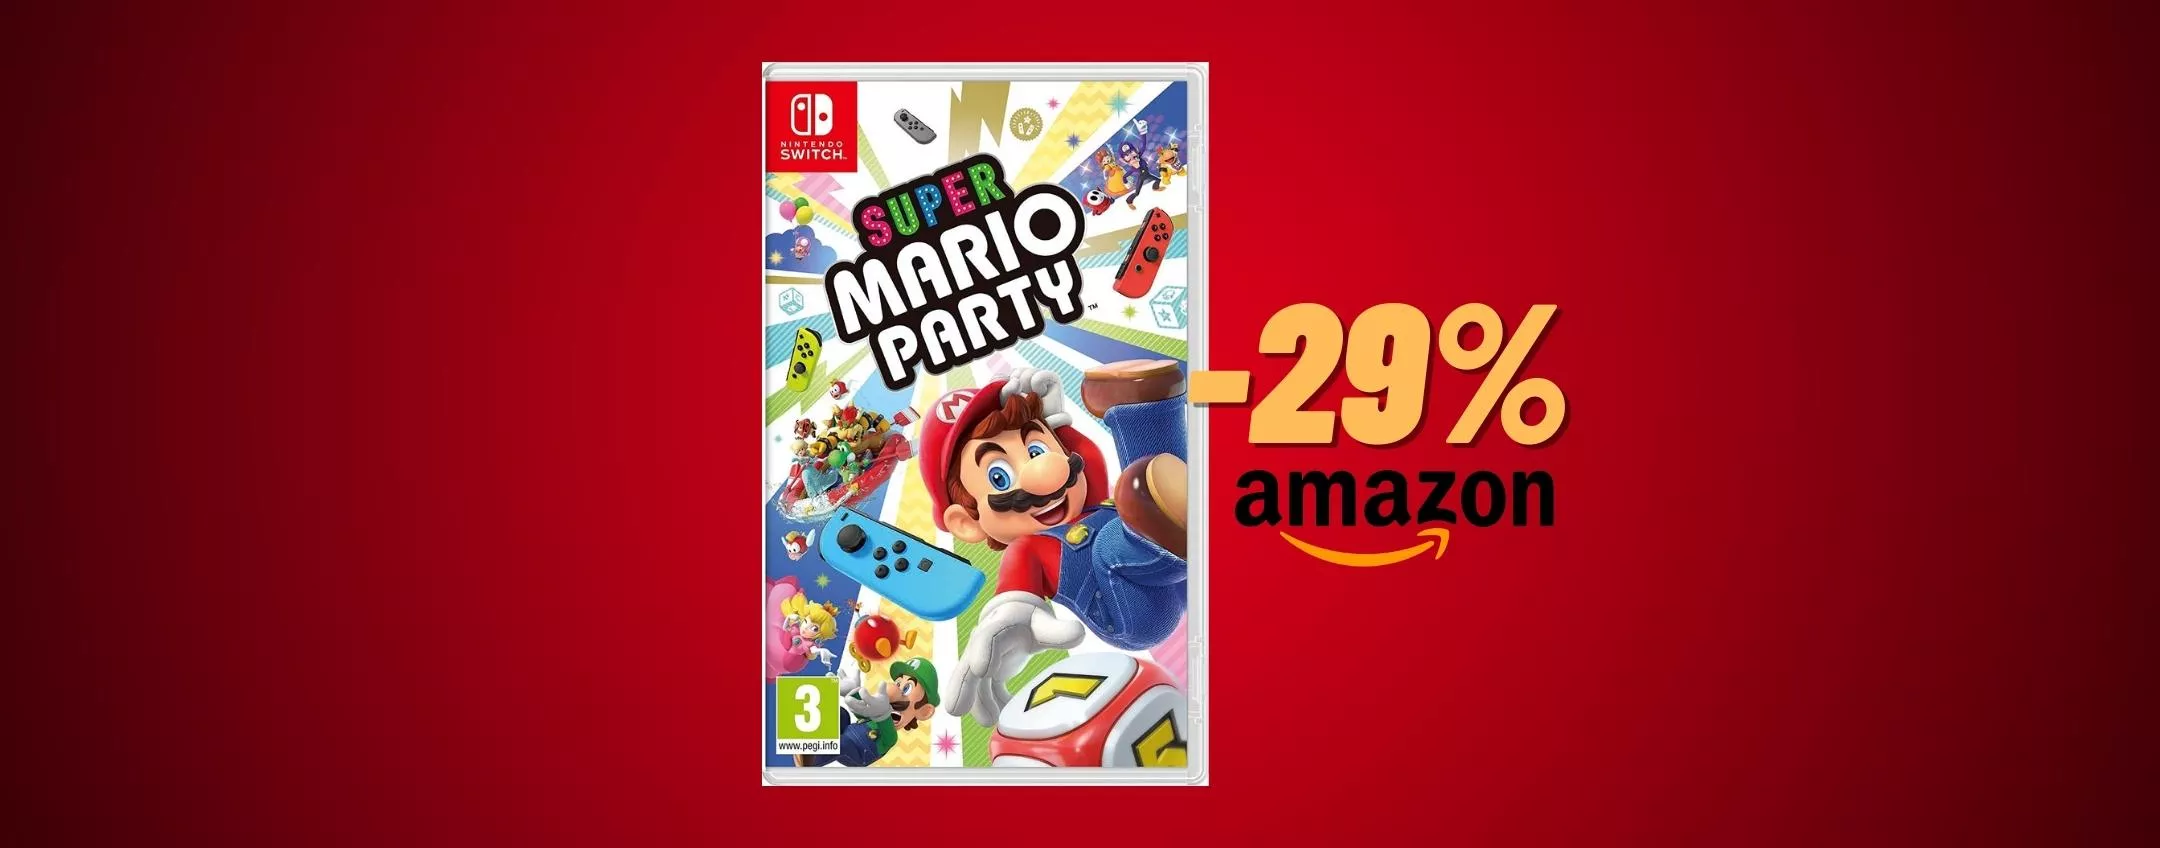 Super Mario Party per un NATALE da paura: sconto del 29%